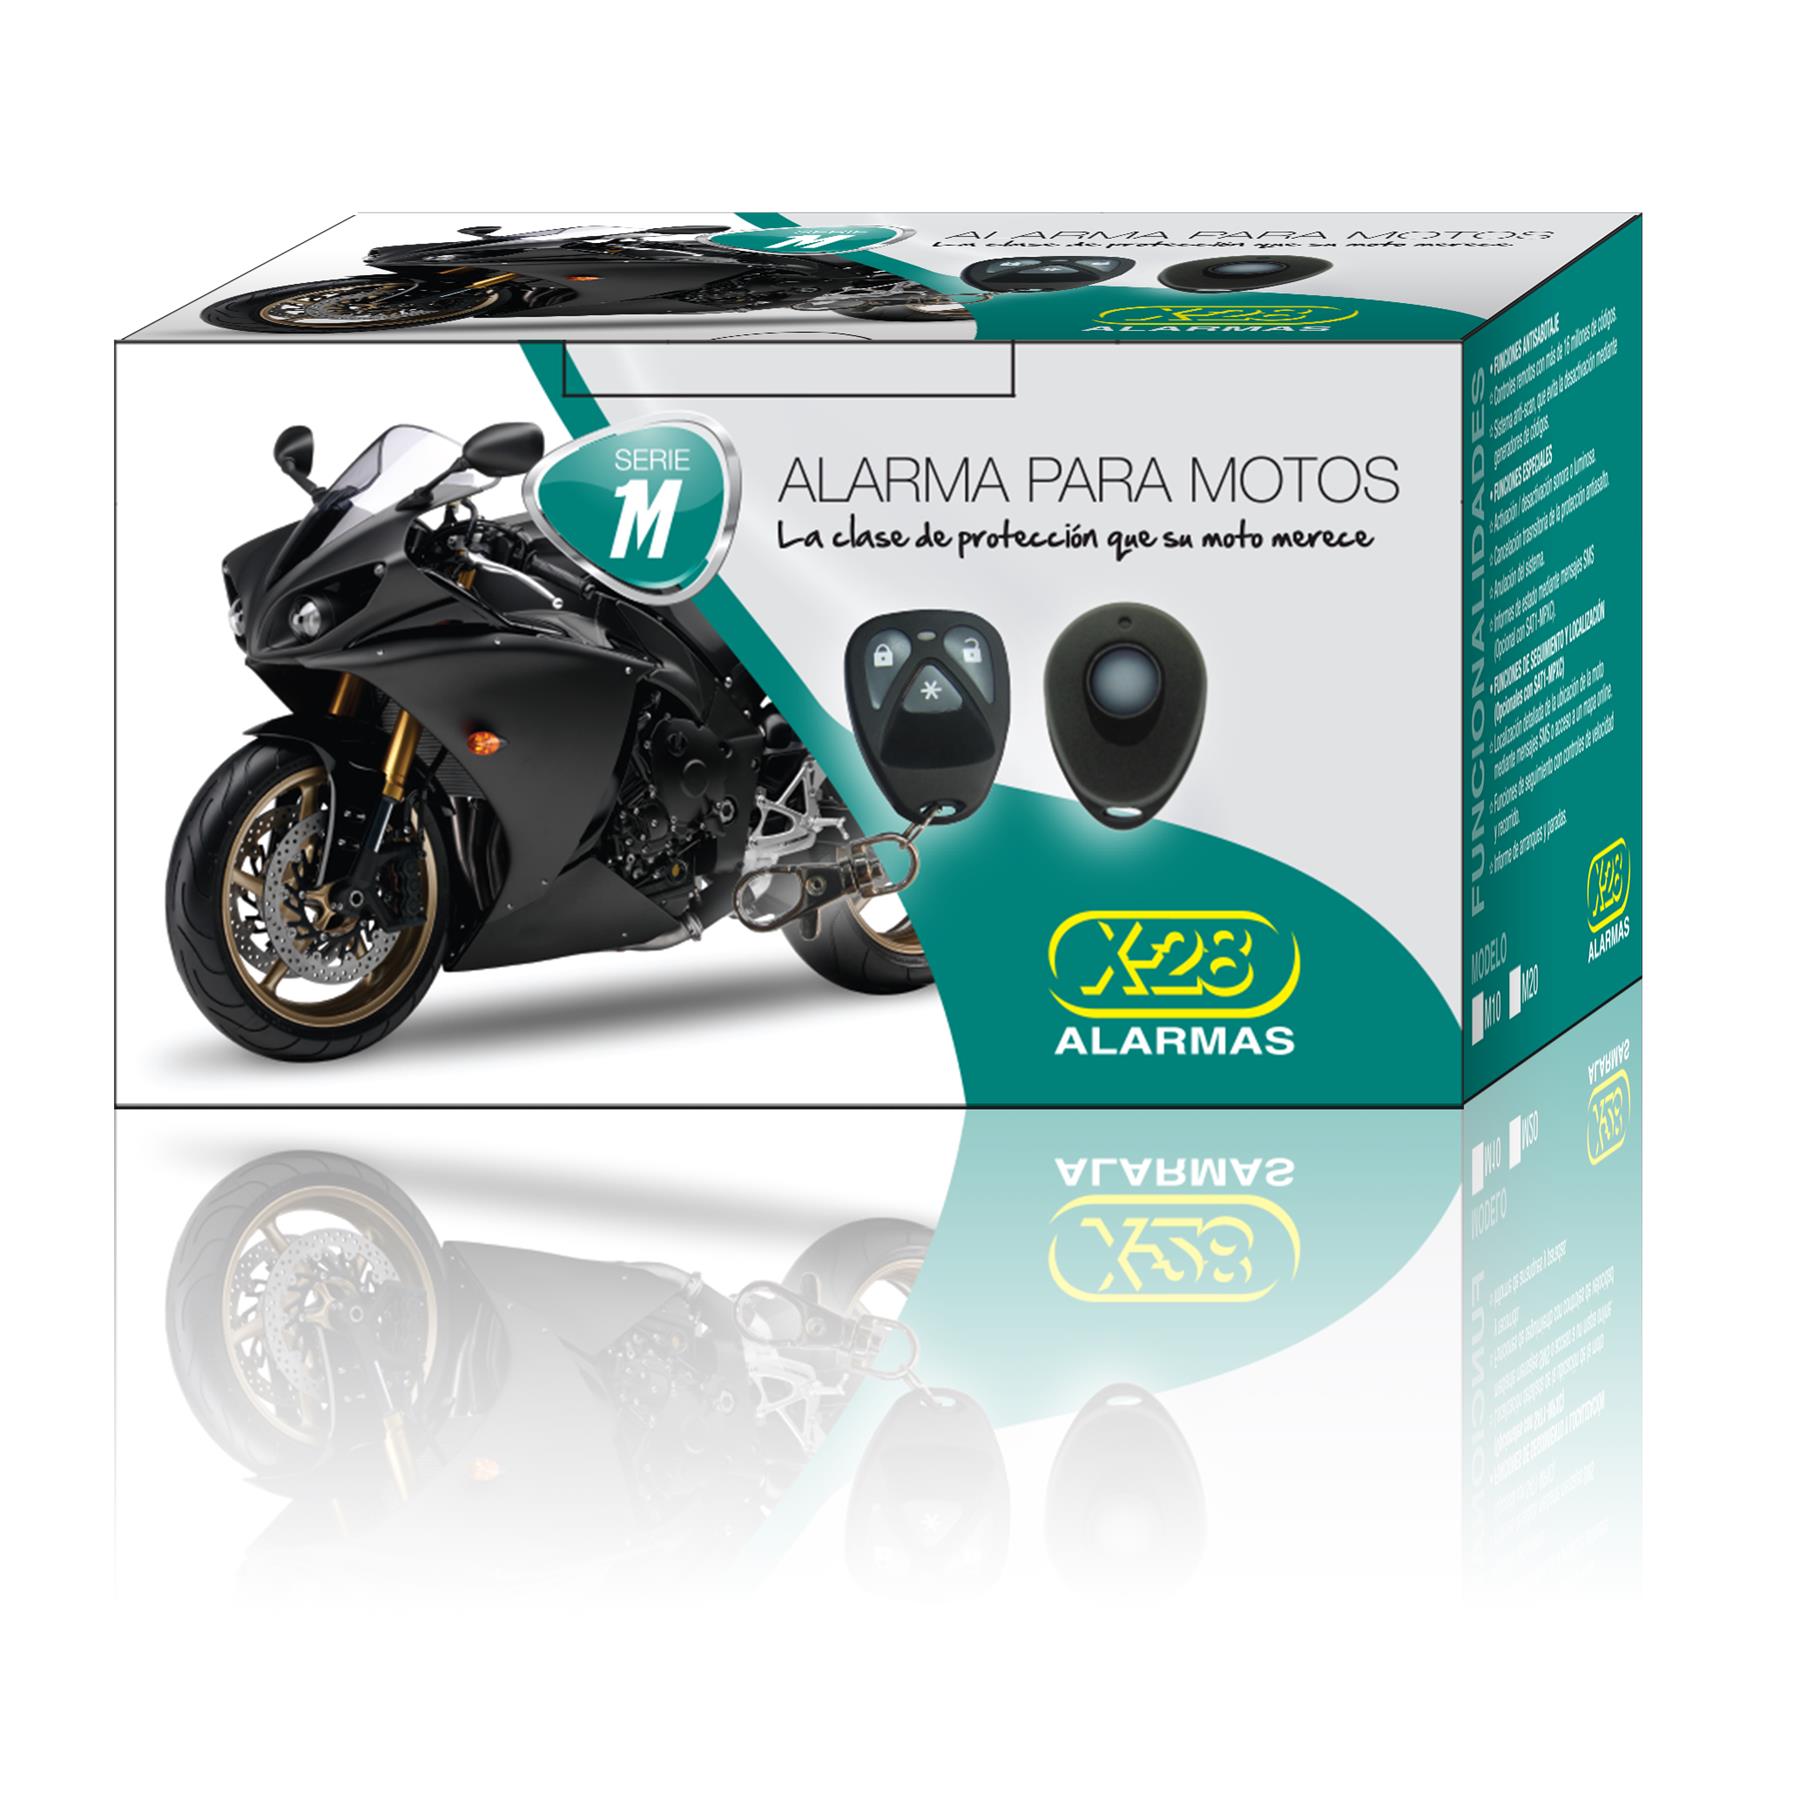 Alarma Moto X-28 1 Control M10 con Presencia - Cycles MotoShop